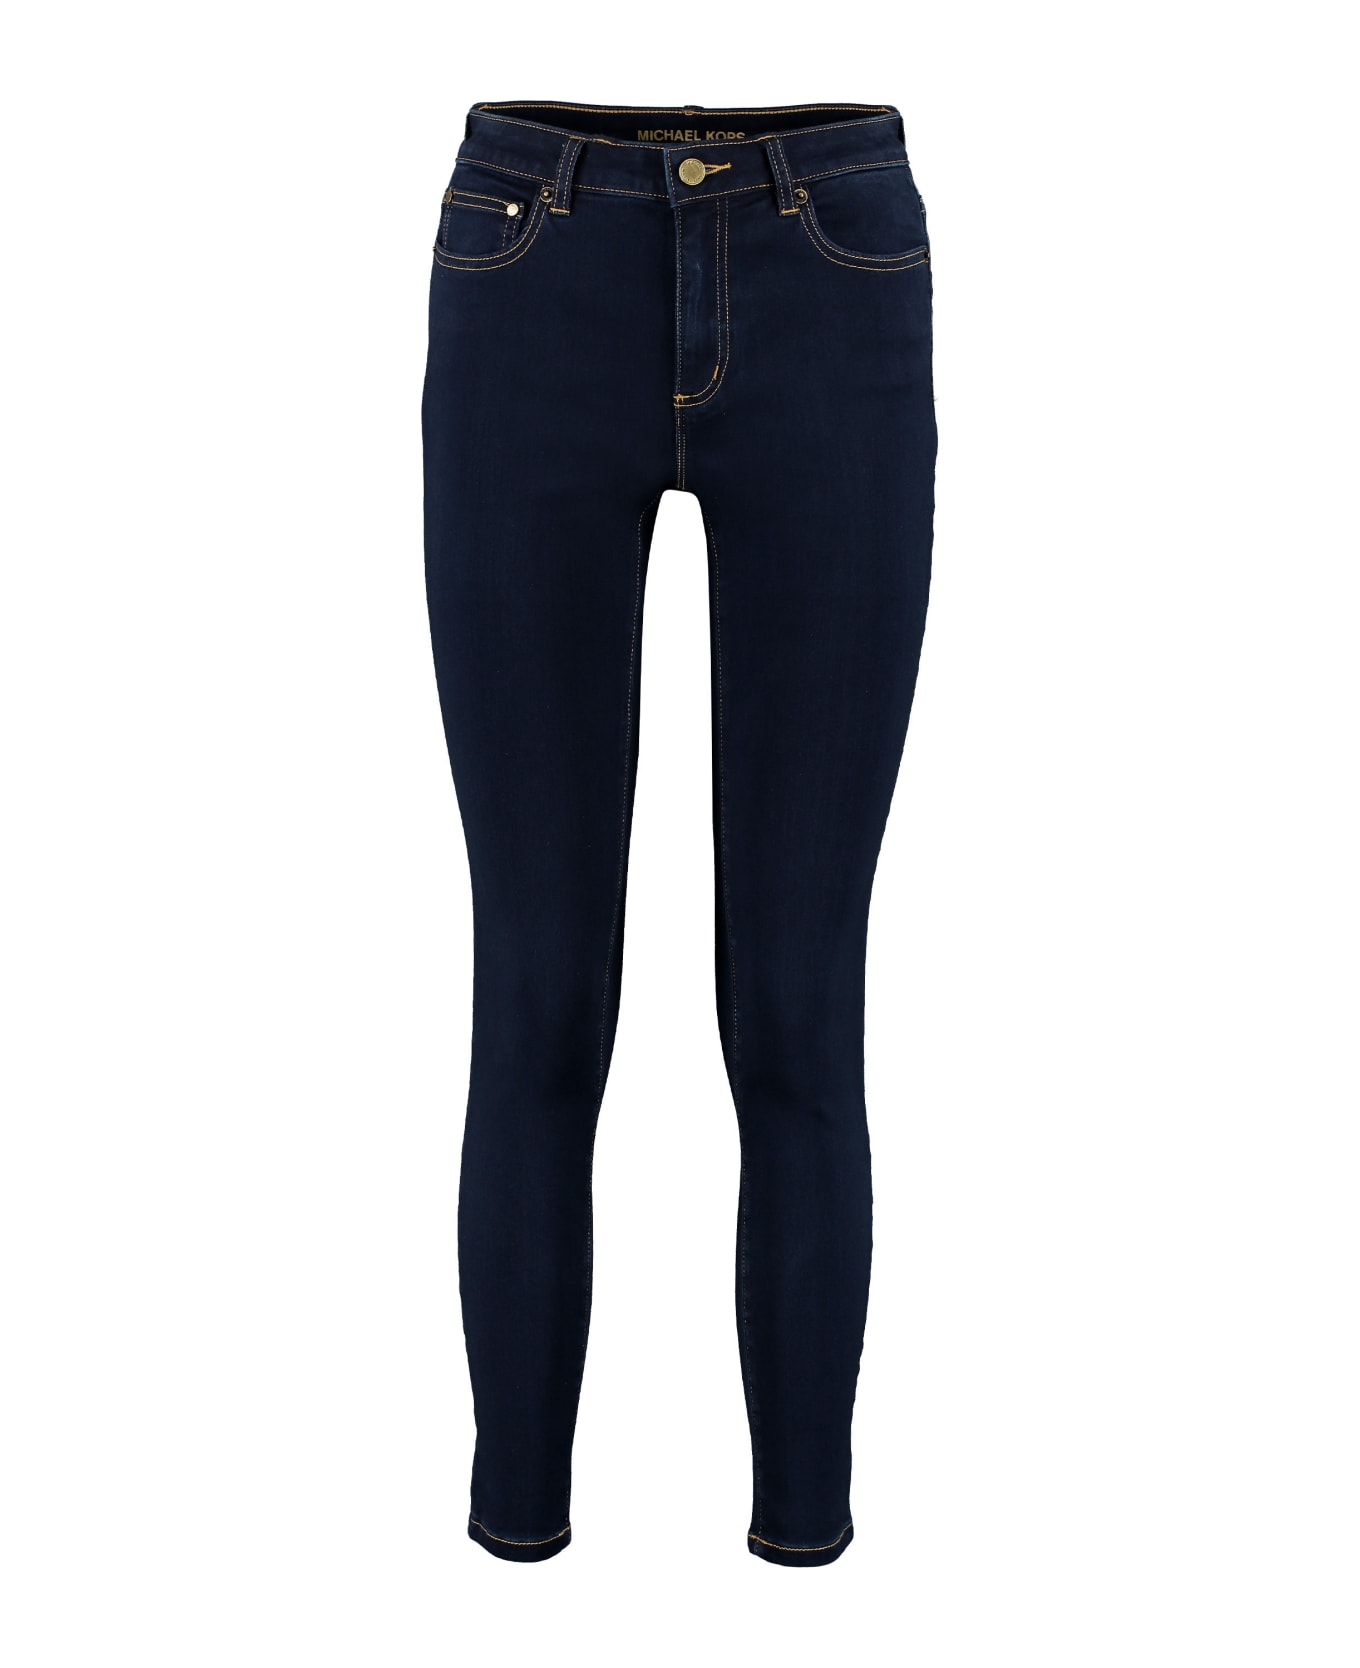 Michael Kors Jeans - BLUE